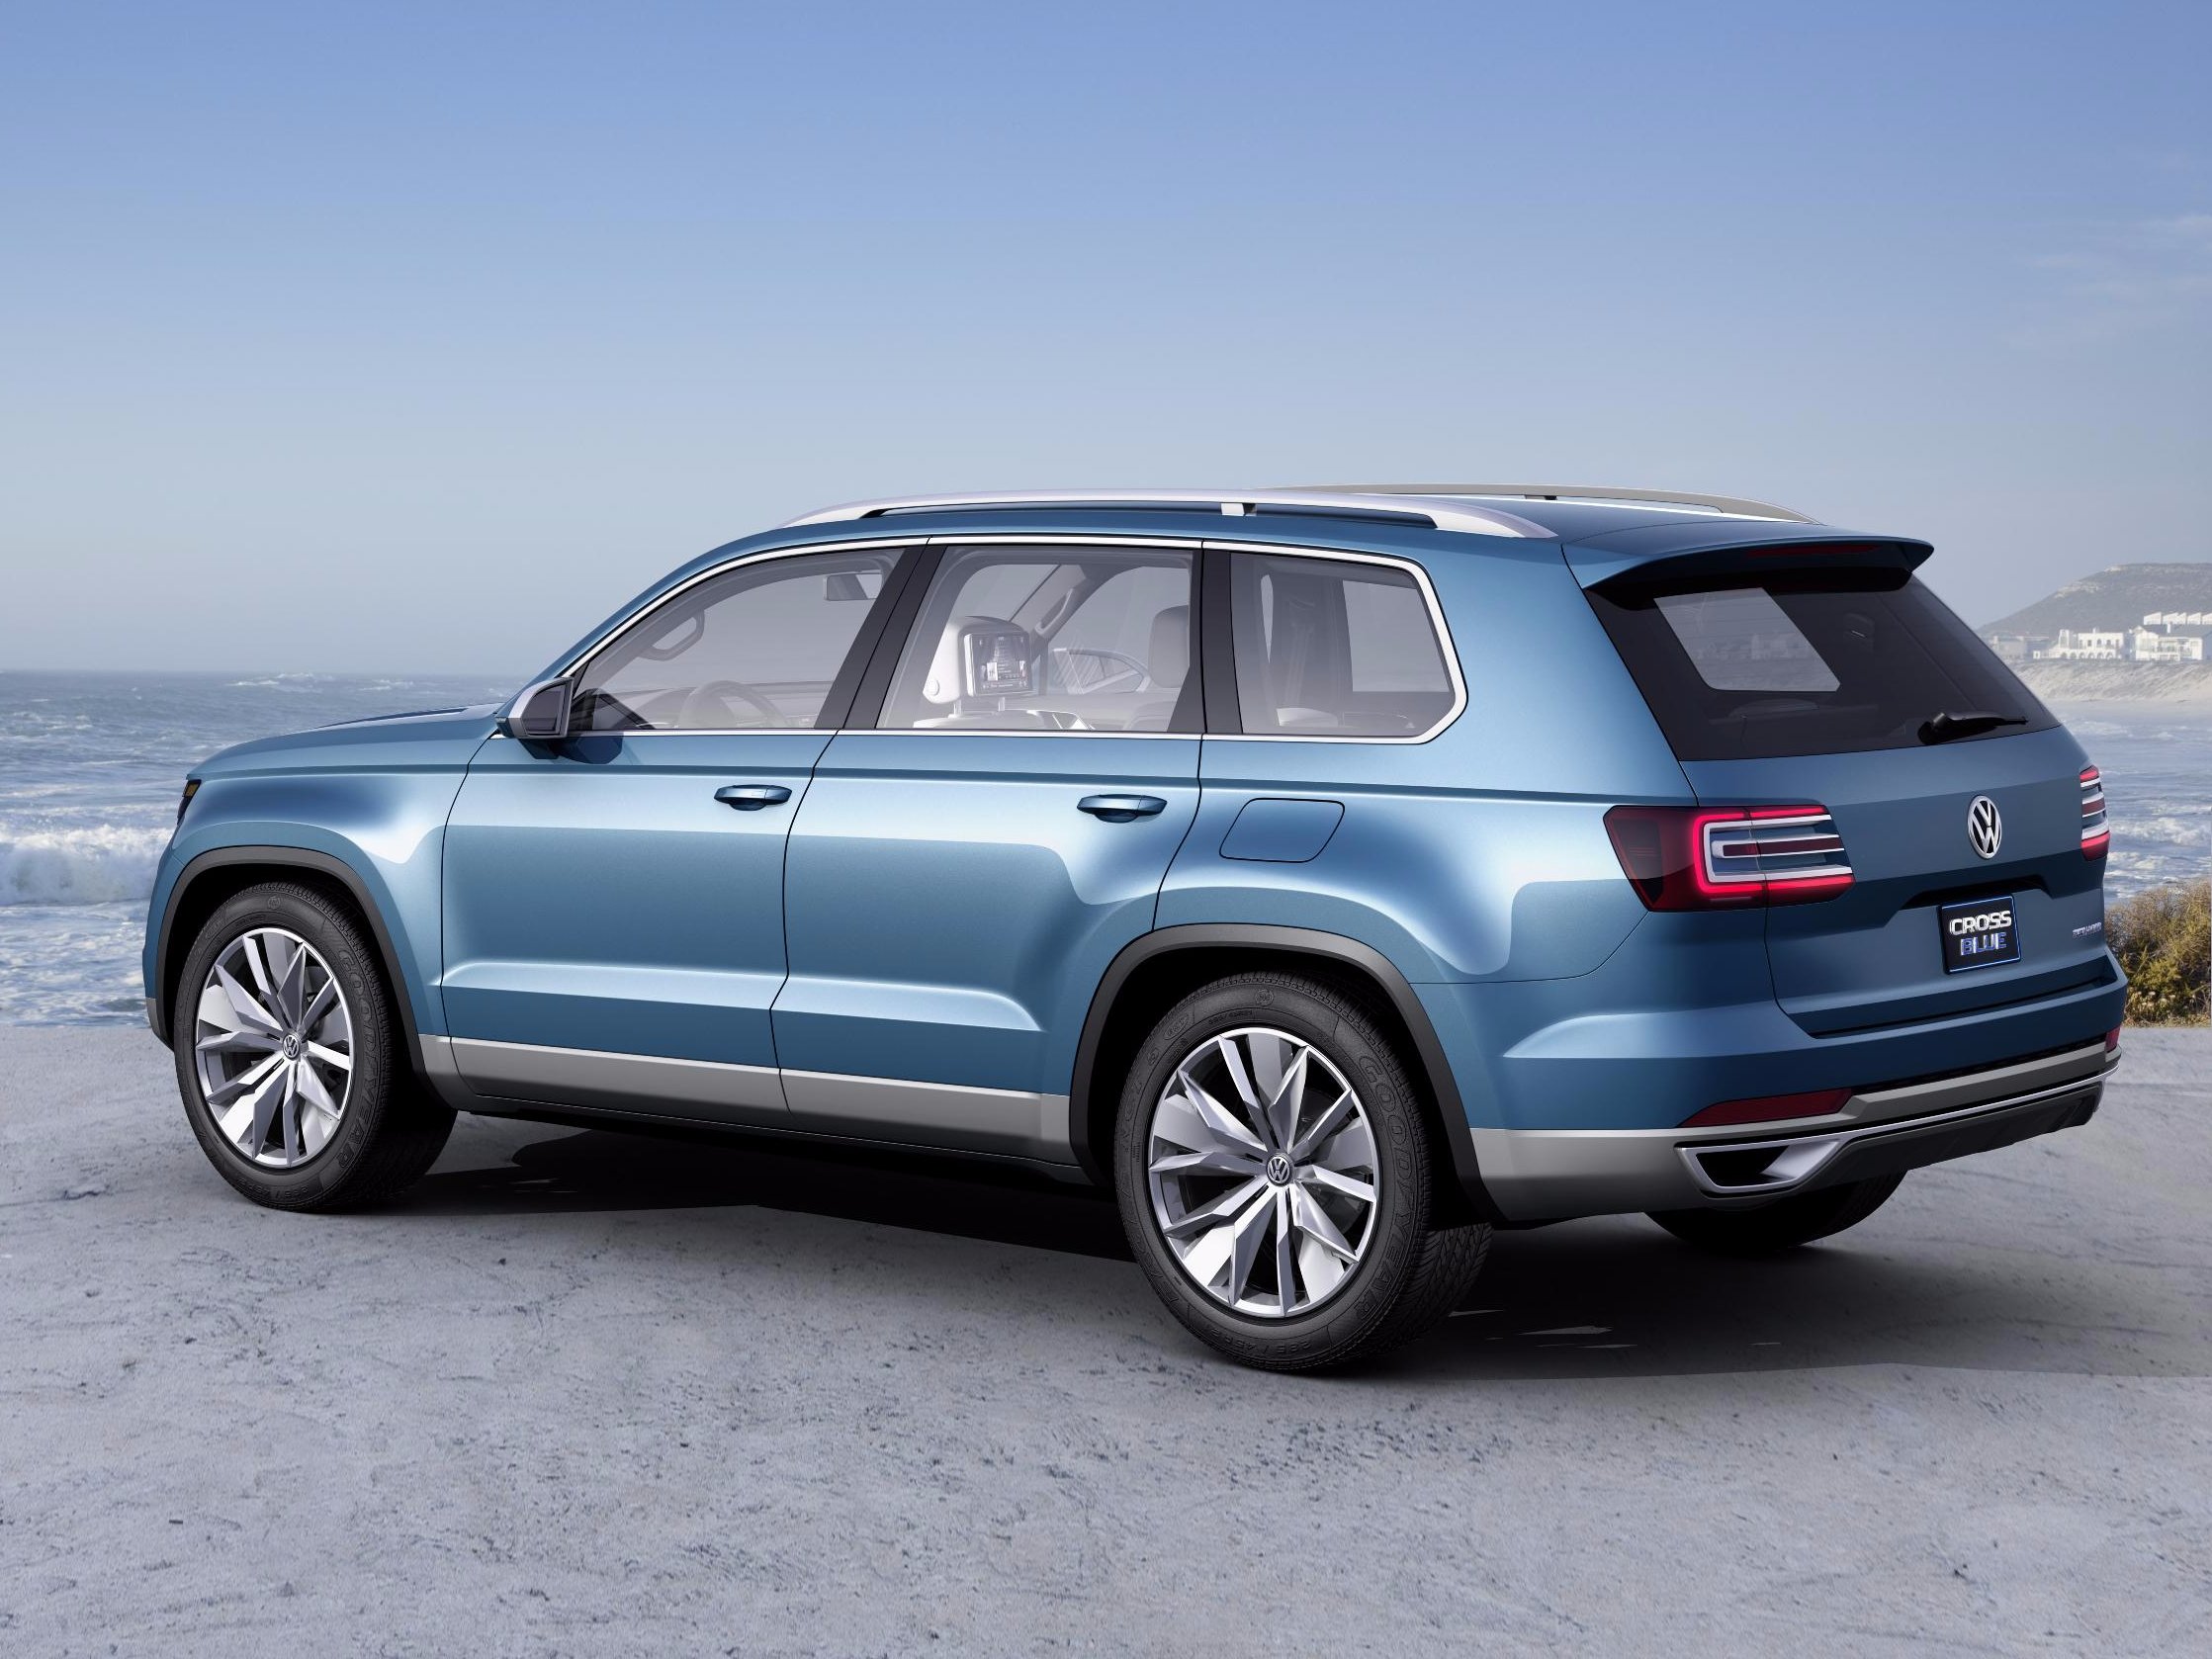 Volkswagen'in gizemli yeni SUV'si pazara bir adım daha yaklaştı